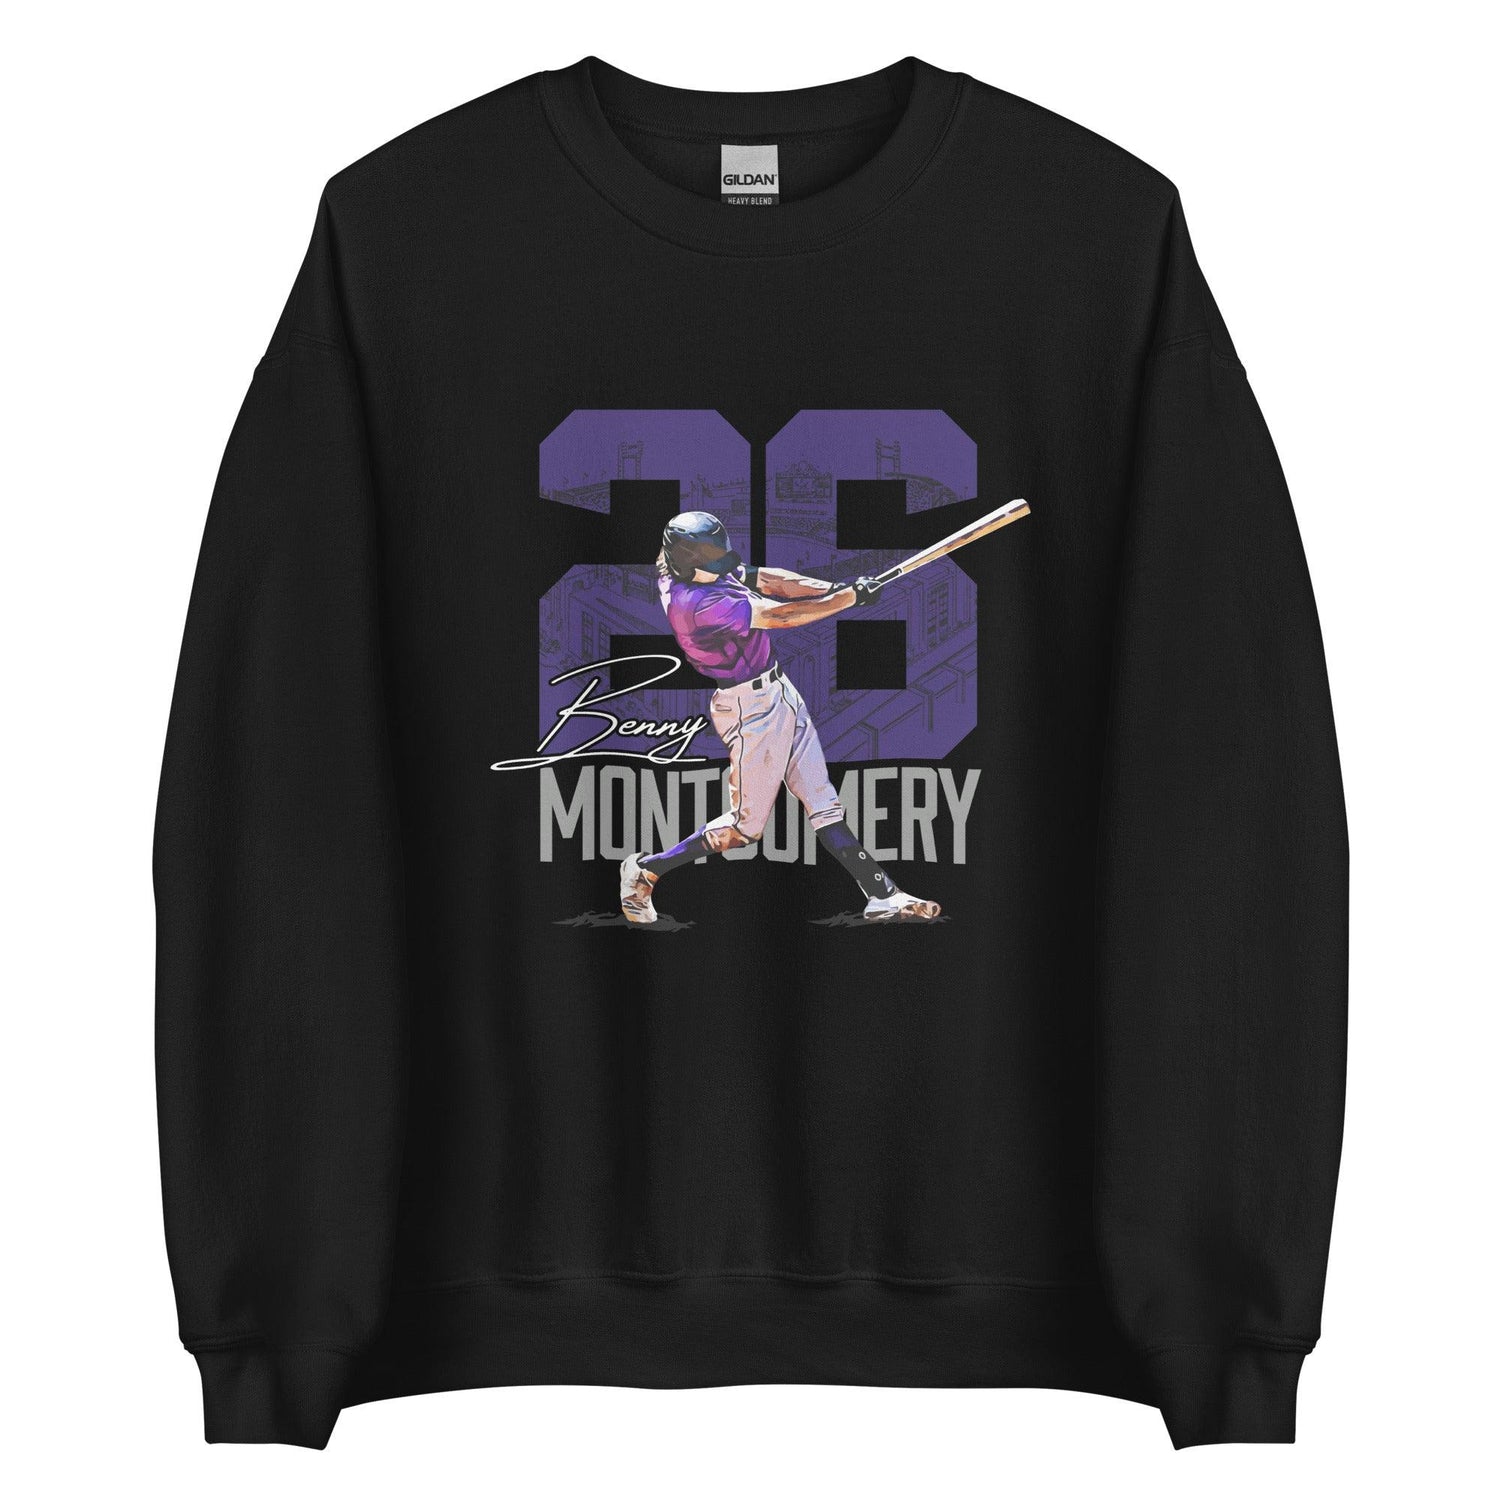 Benny Montgomery "Gameday" Sweatshirt - Fan Arch